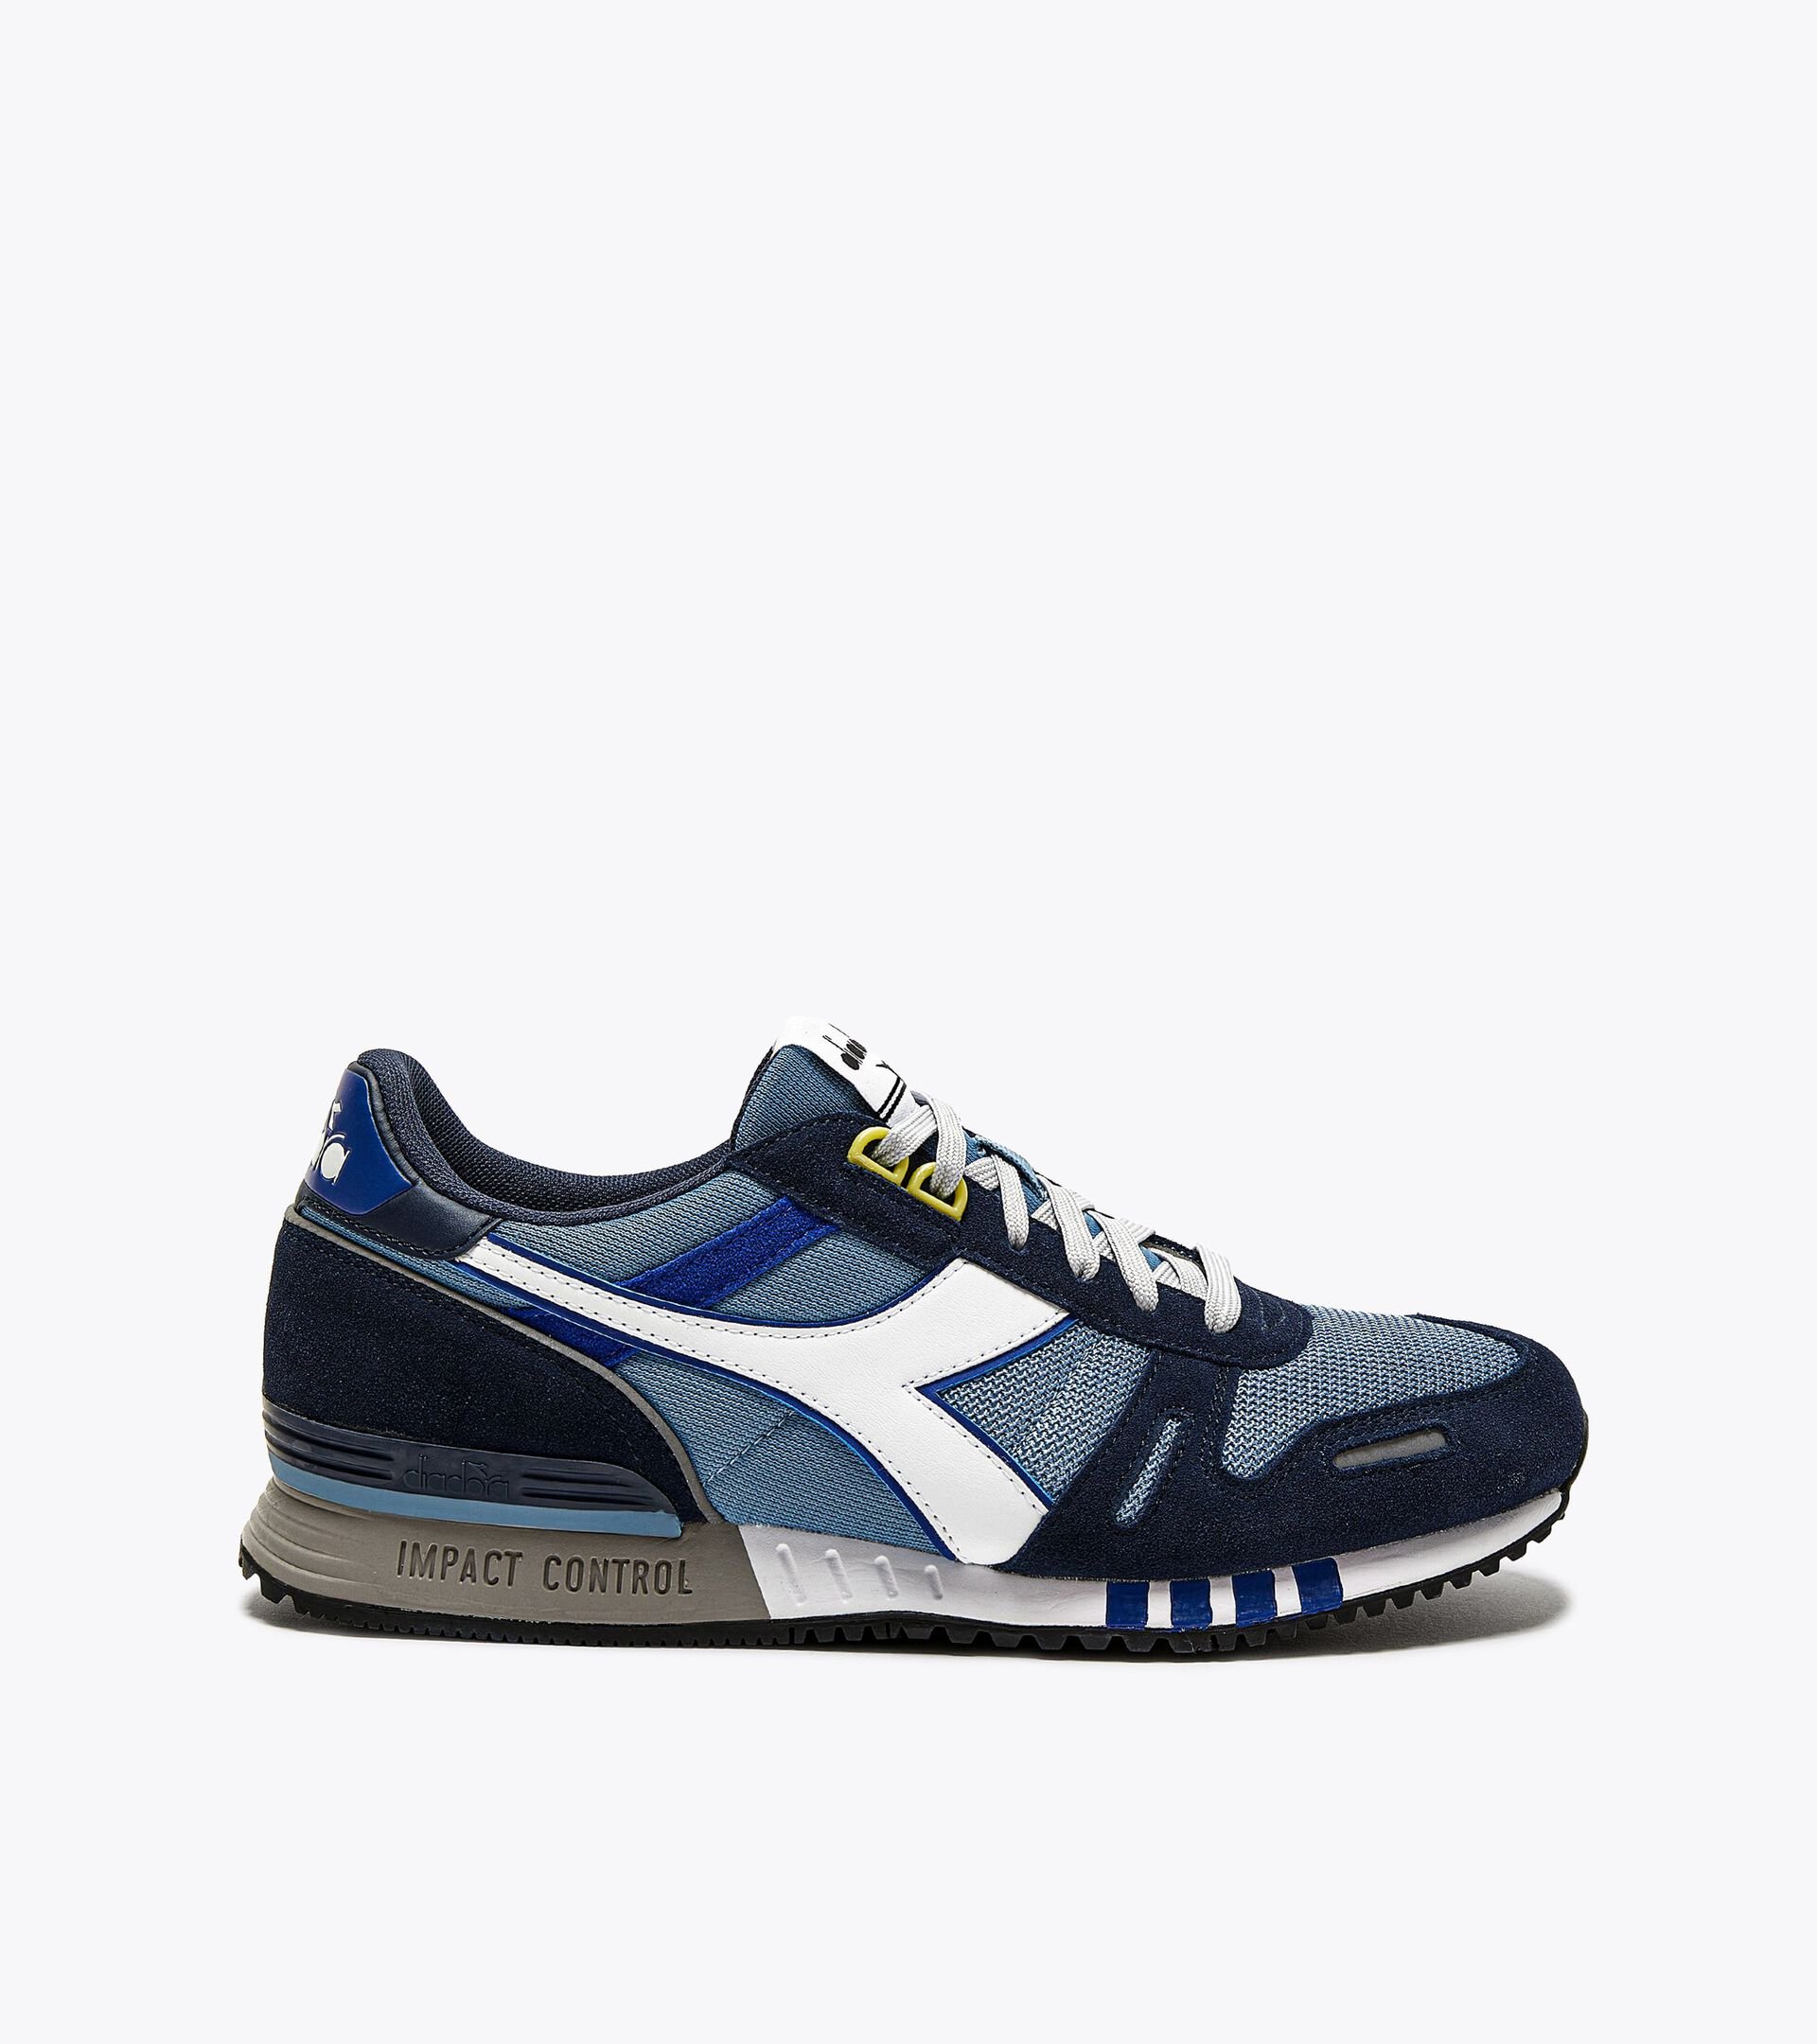 TITAN Sports shoes - Men - Diadora Online Store US